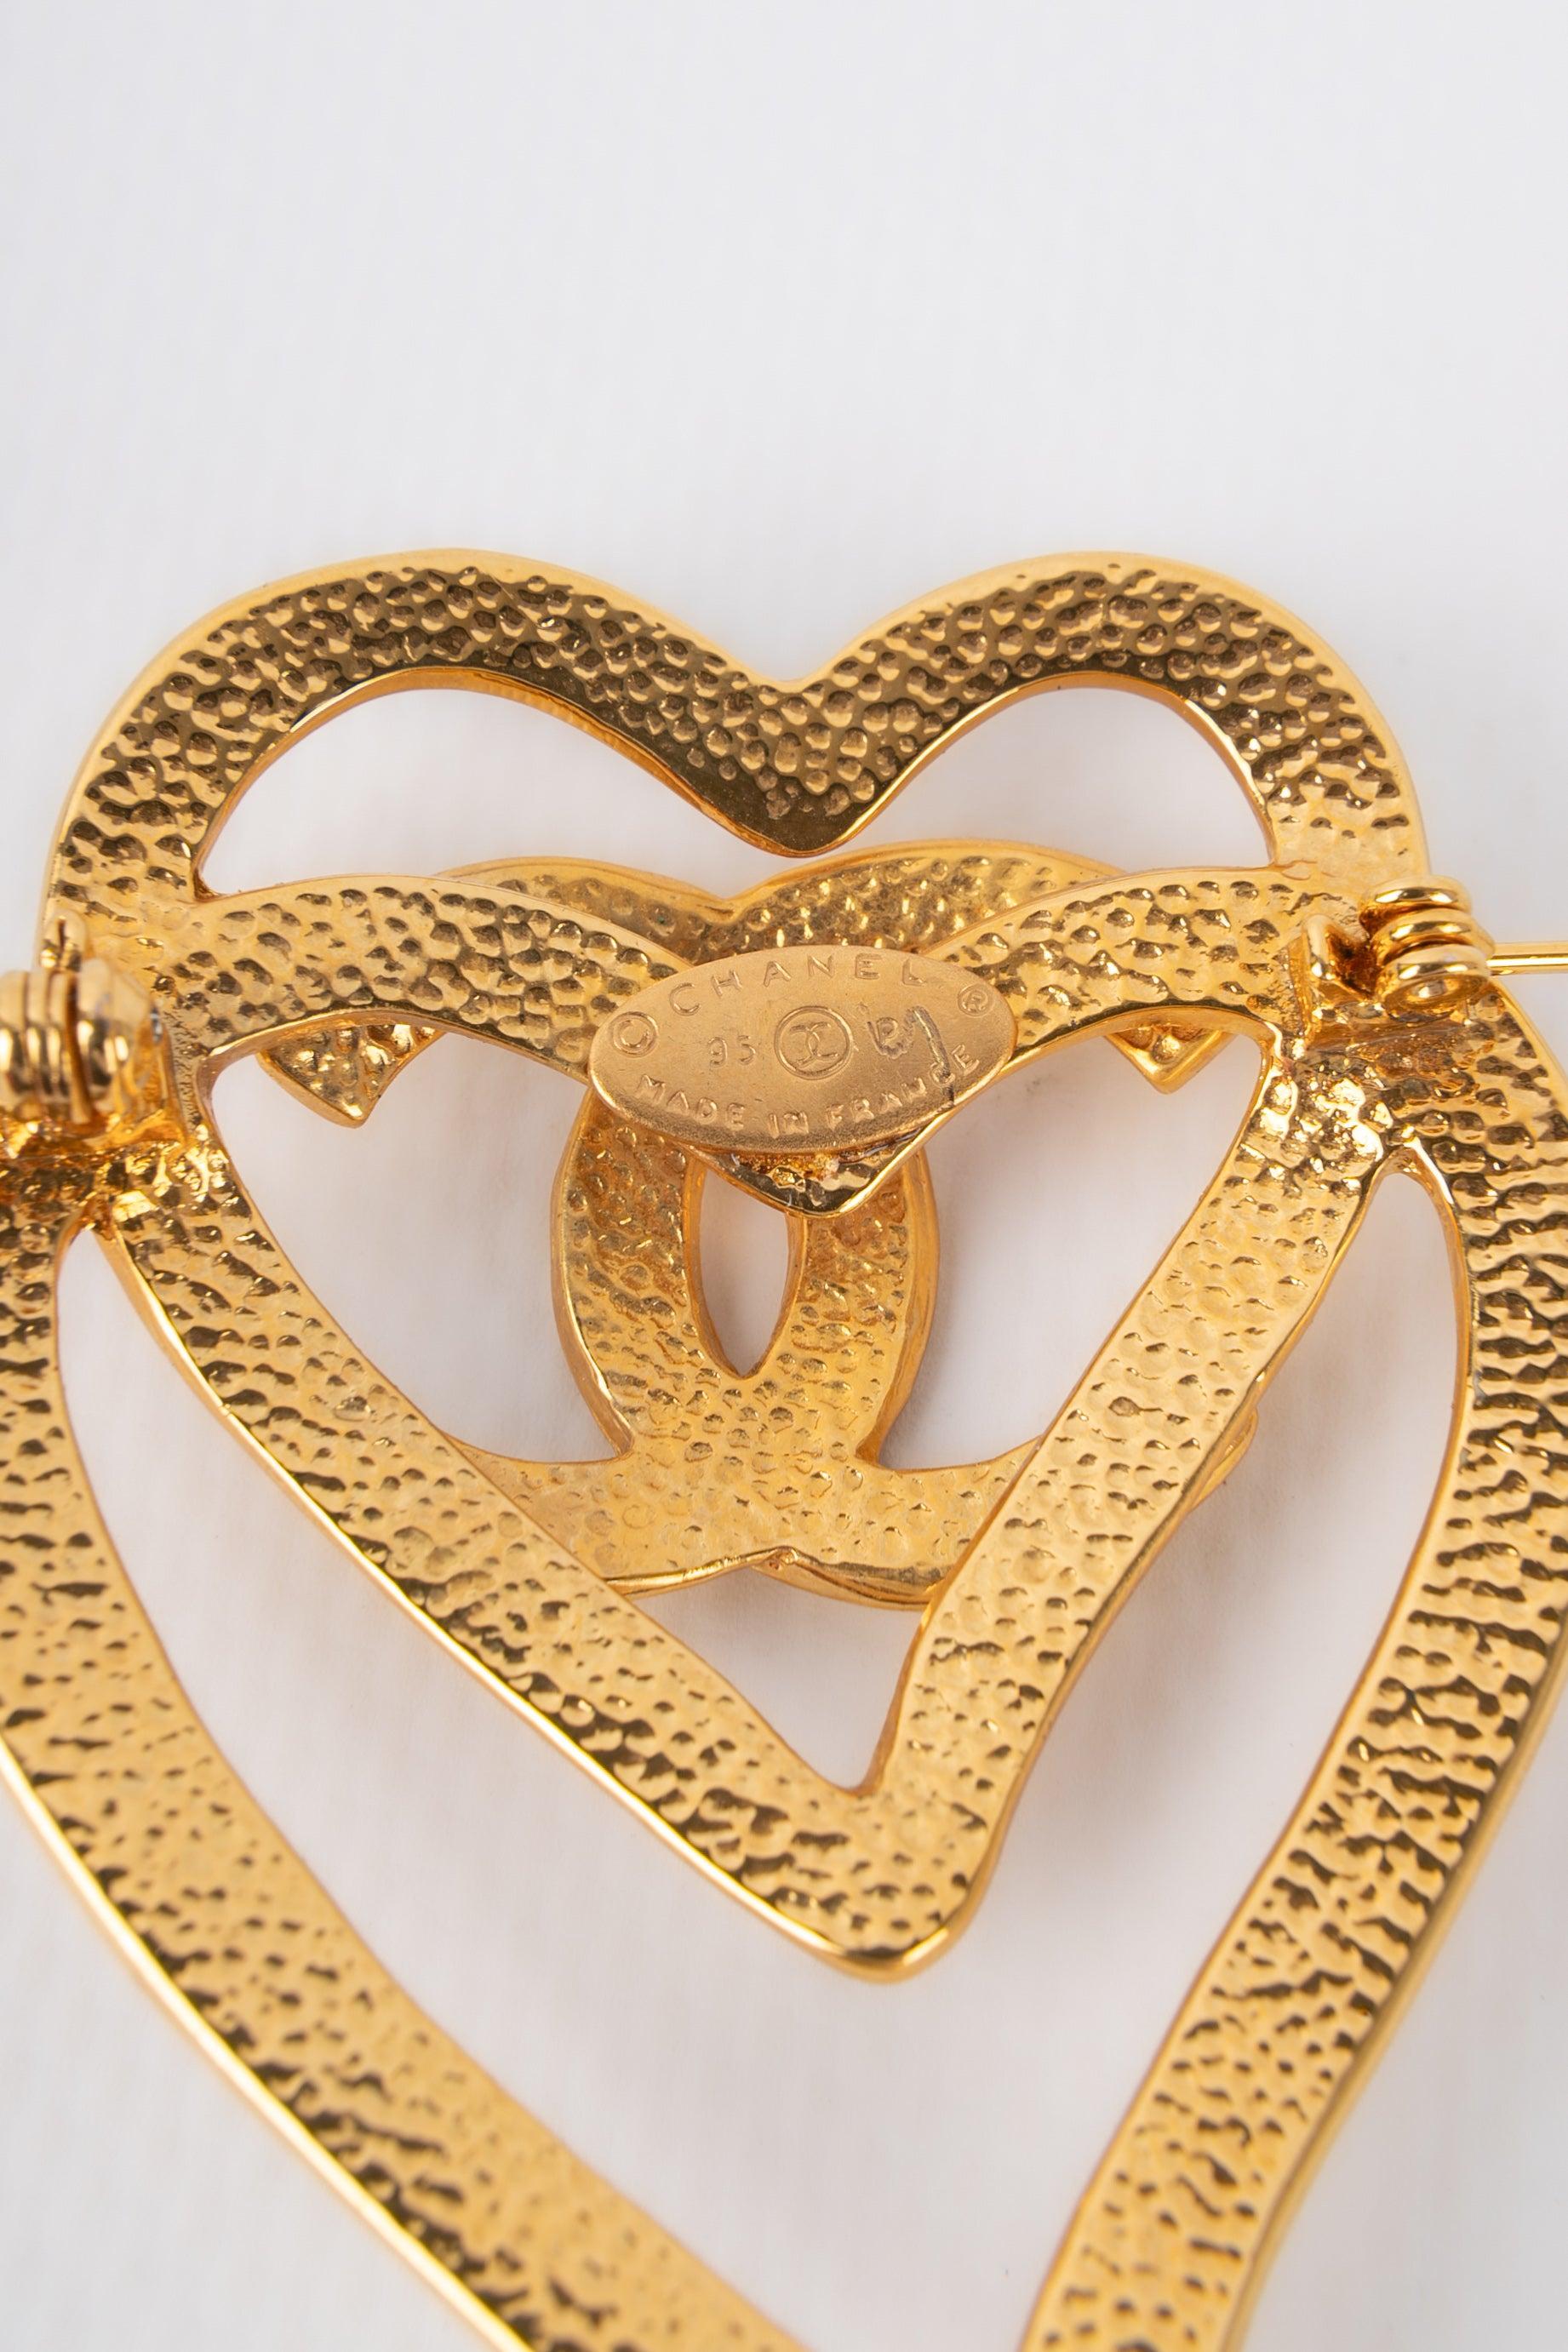 Women's Chanel Heart Brooch in Golden Metal, 1995